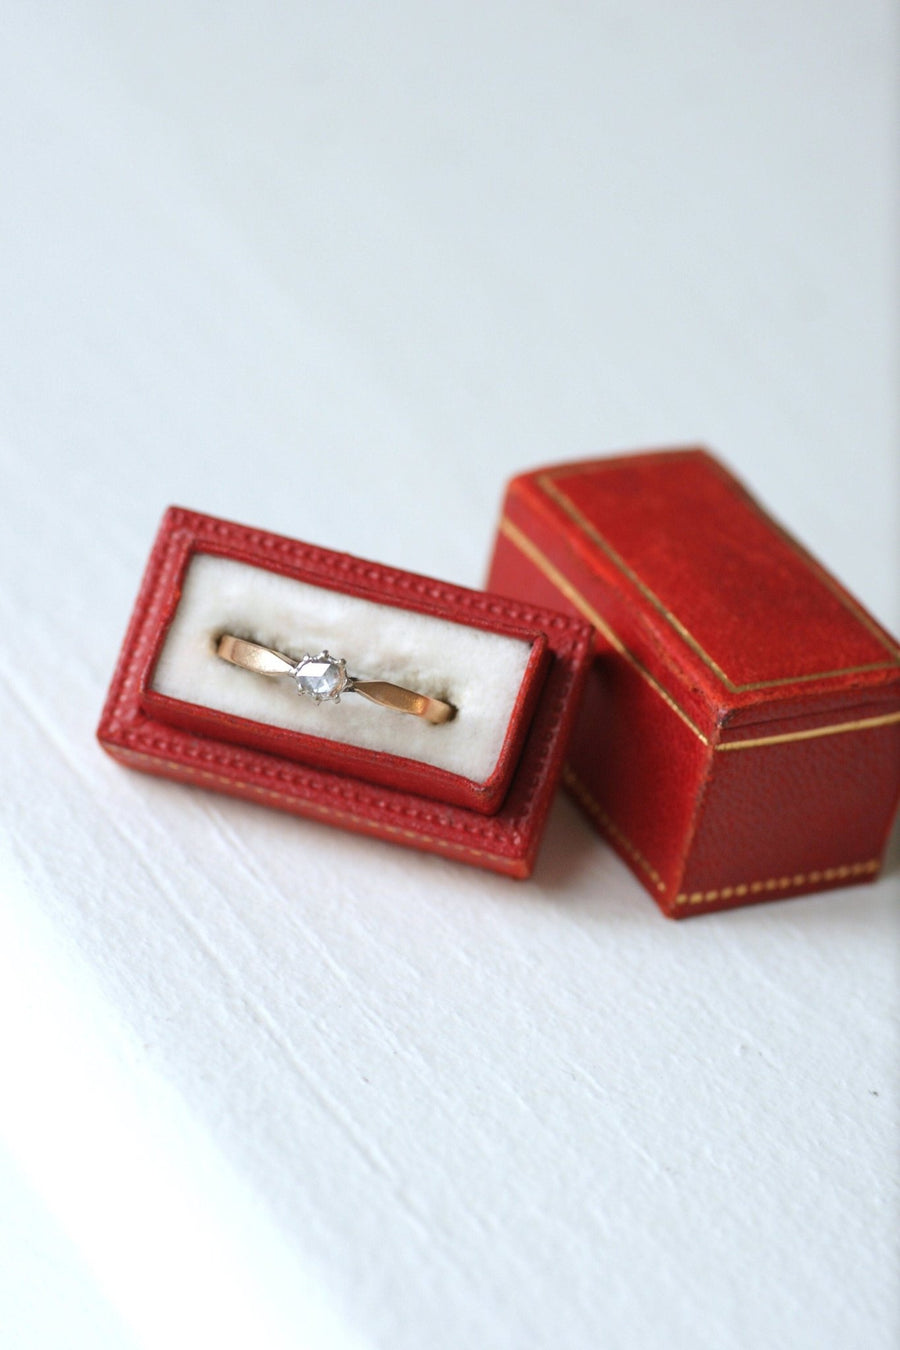 Solitaire diamant sur or rose et argent - Galerie Pénélope